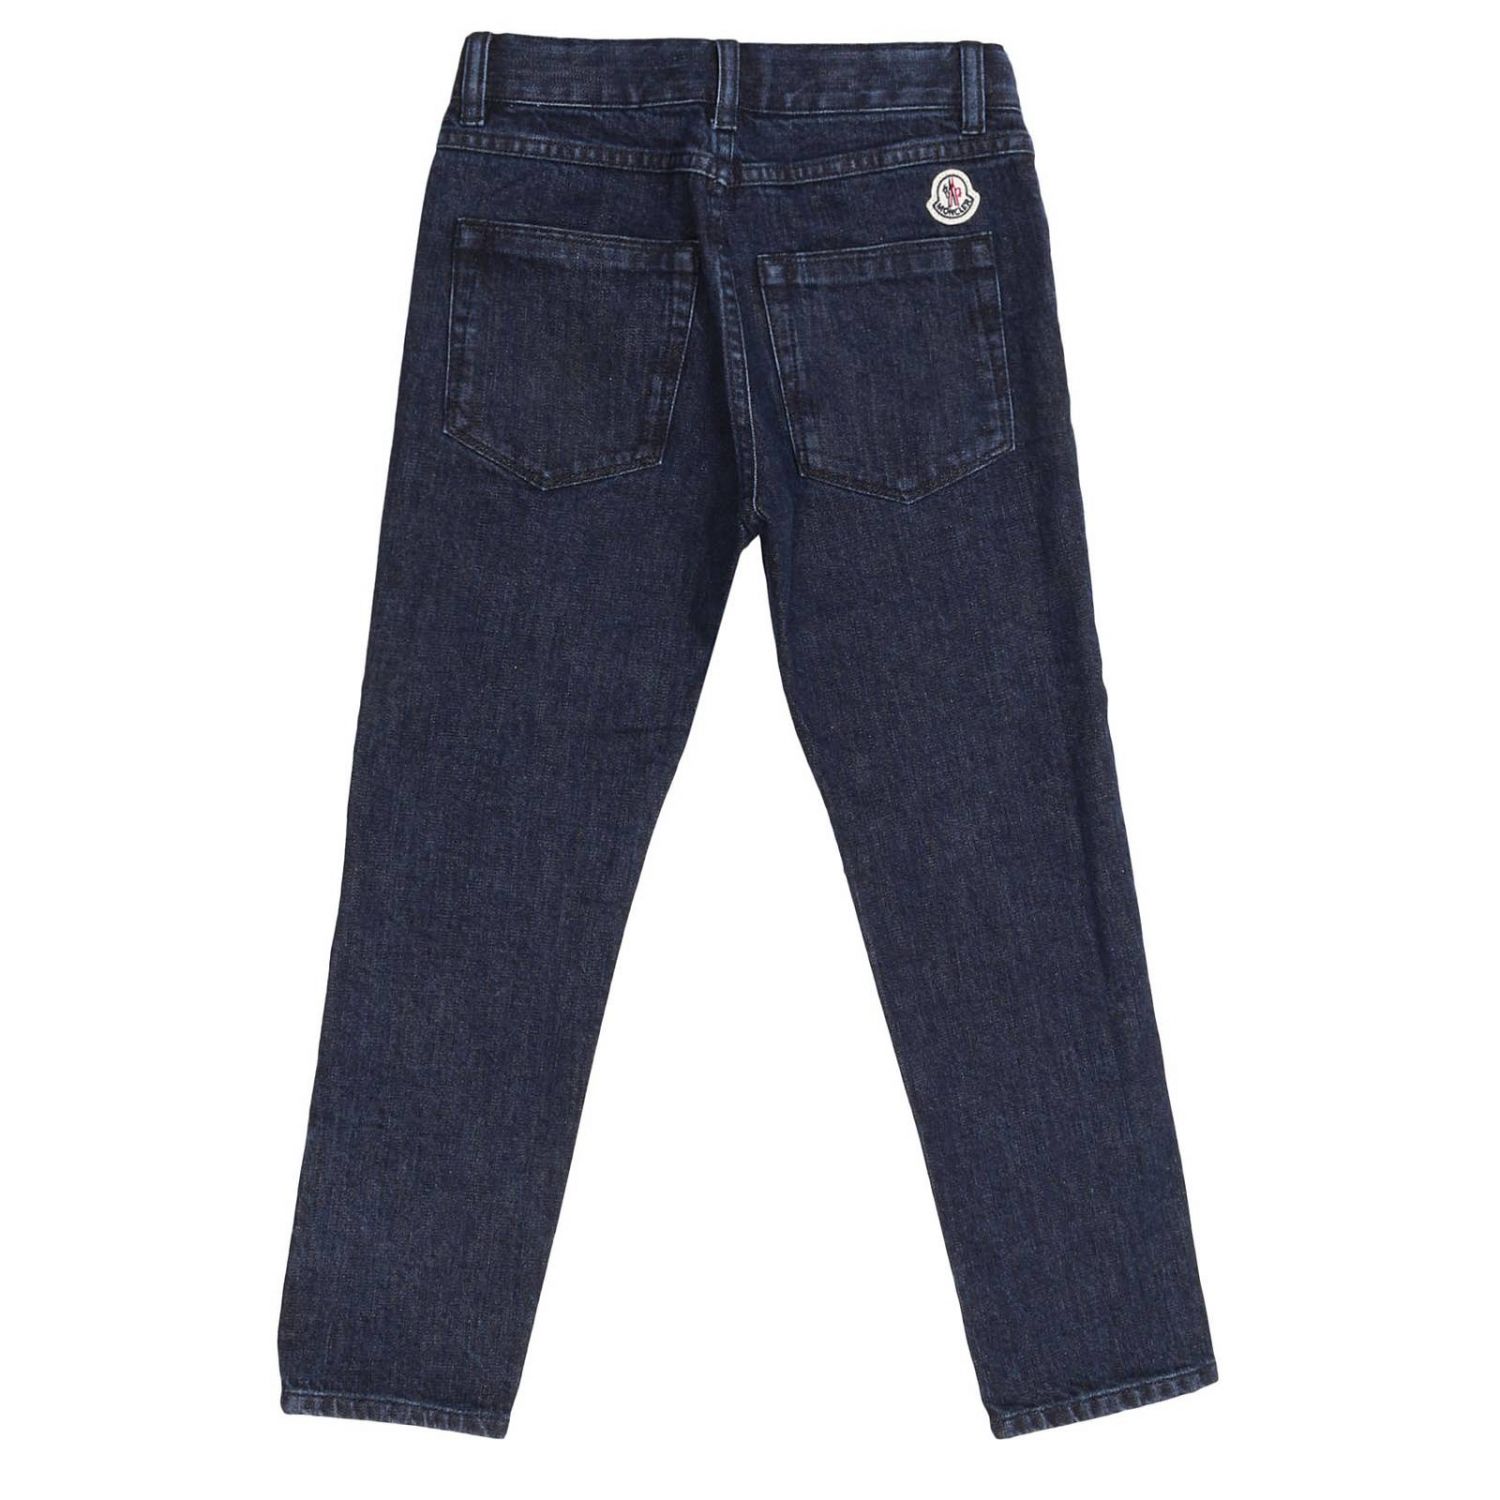 Buy > light grey jeans men > in stock